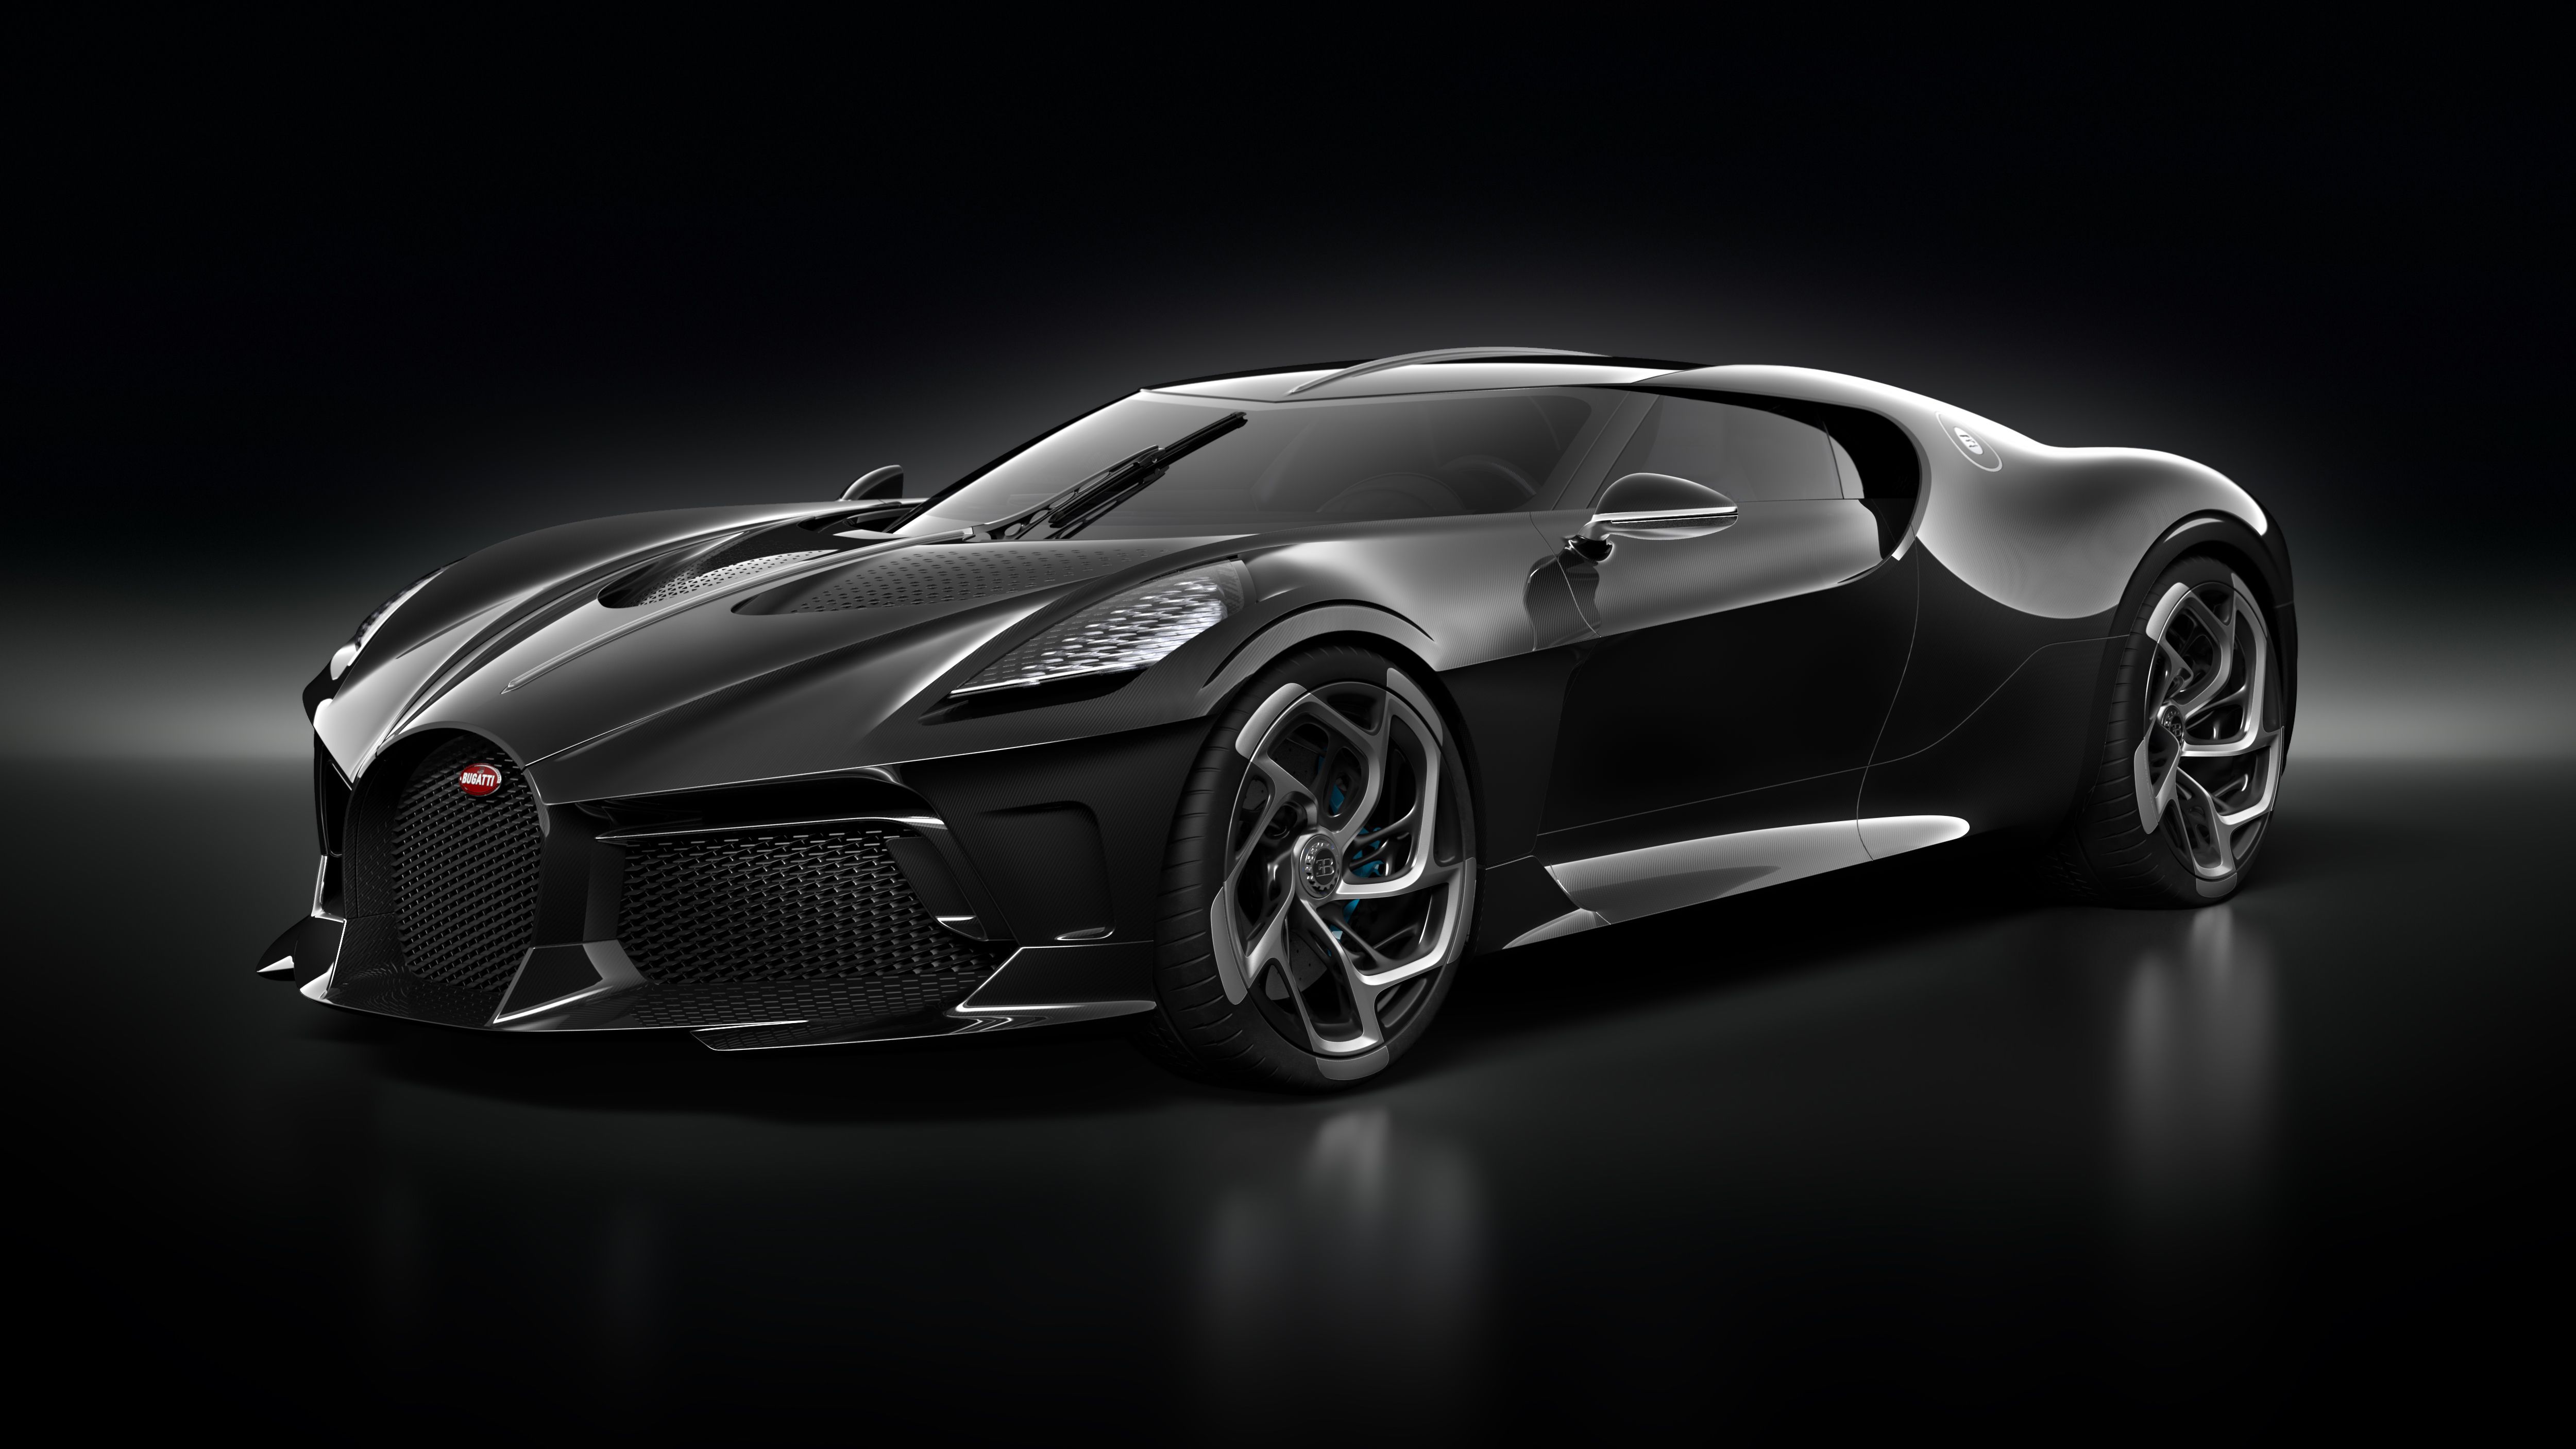 World's most expensive car is Bugatti's La Voiture Noire